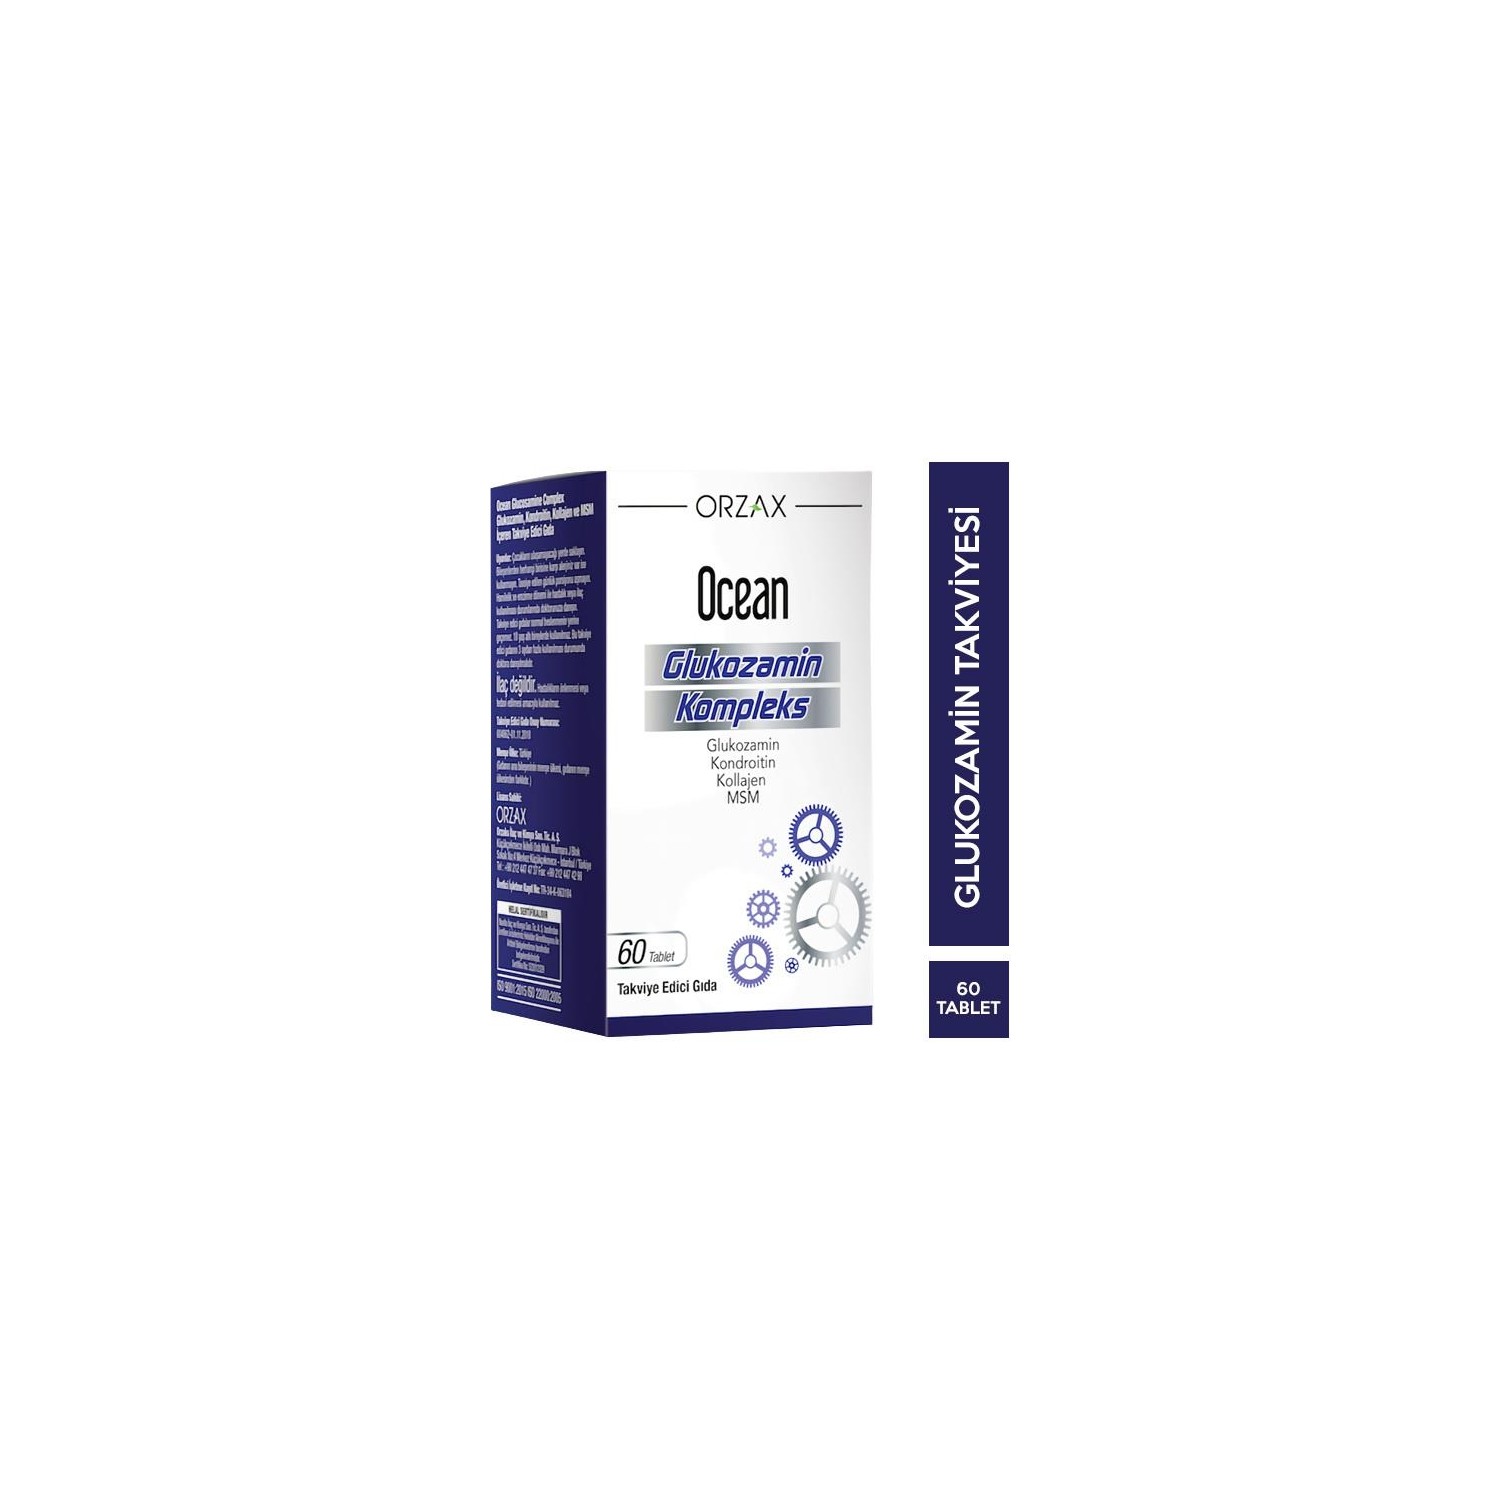 Комплекс глюкозамина Ocean, 60 таблеток комплекс глюкозамина ocean 2 упаковки по 60 таблеток